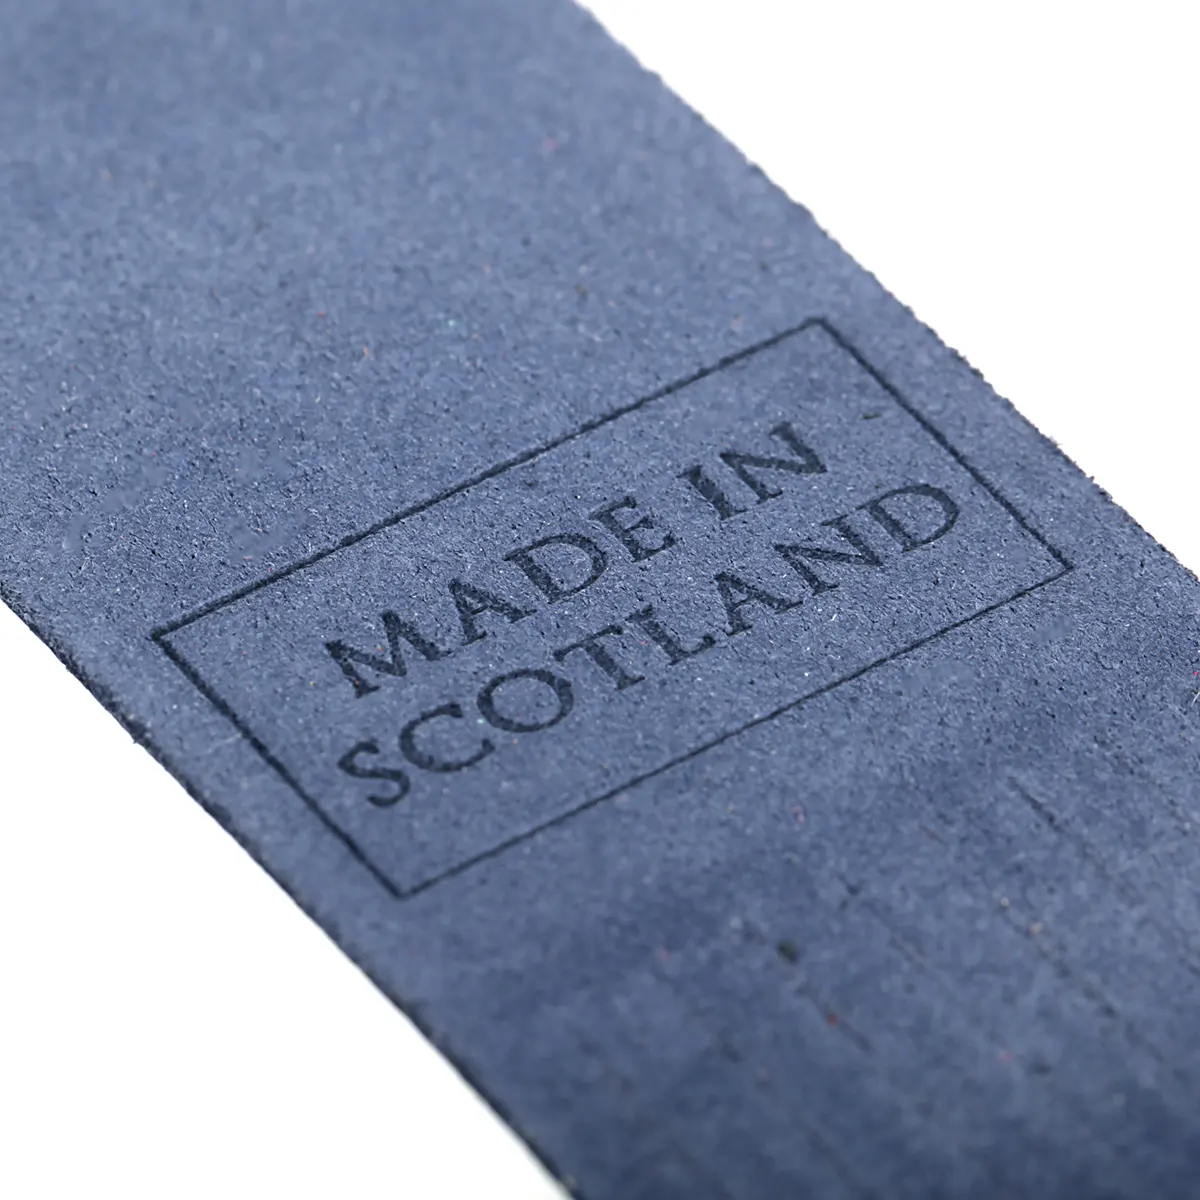 Inverness - Lesezeichen aus Leder in Dunkeblau  - Made in Scotland